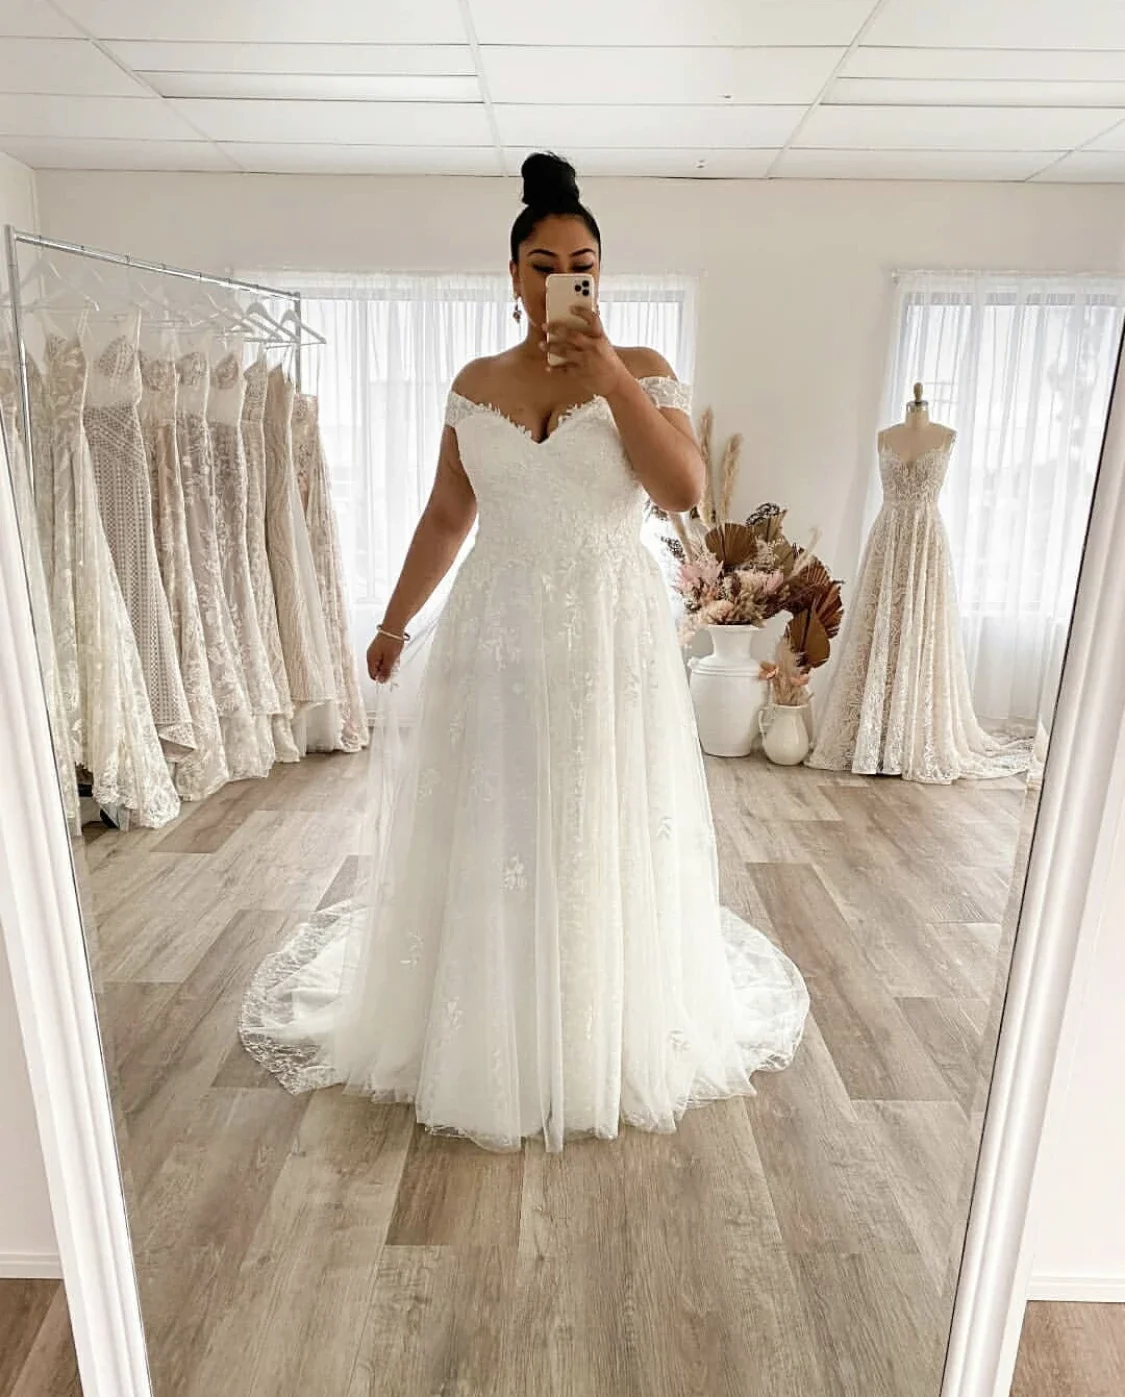 

Roseca Ye V Neck Off The Shoulder White Wedding Dress Plus Size Lace Appliques Brides Vestido De Noiva A Line Bridal Gowns